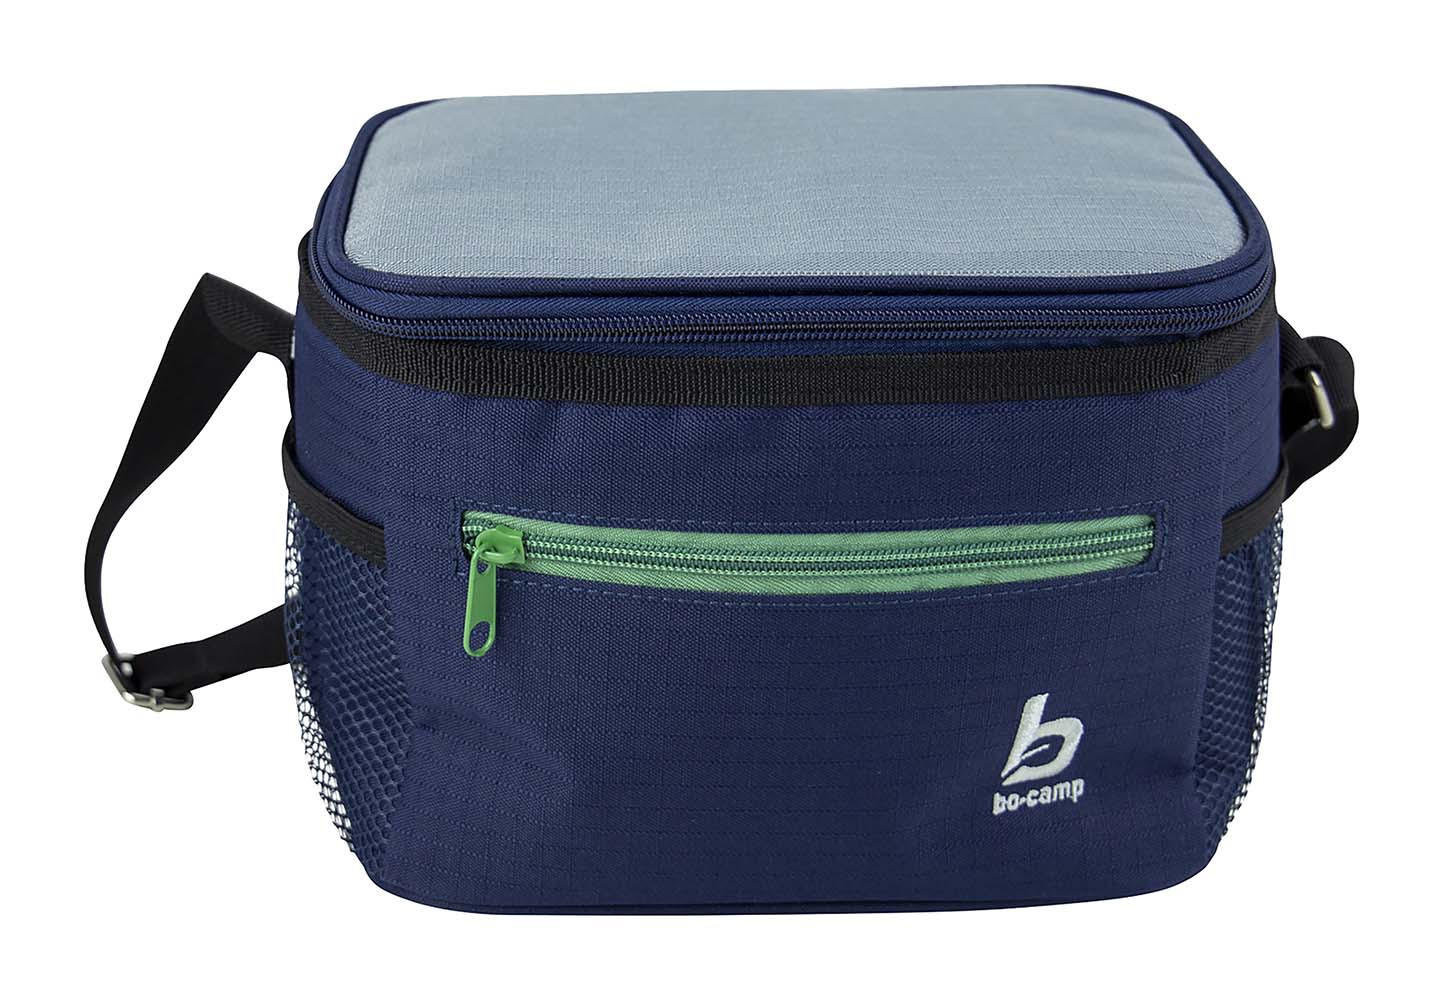 Bo-Camp - Cooler bag - Blue - 5 Liters detail 2